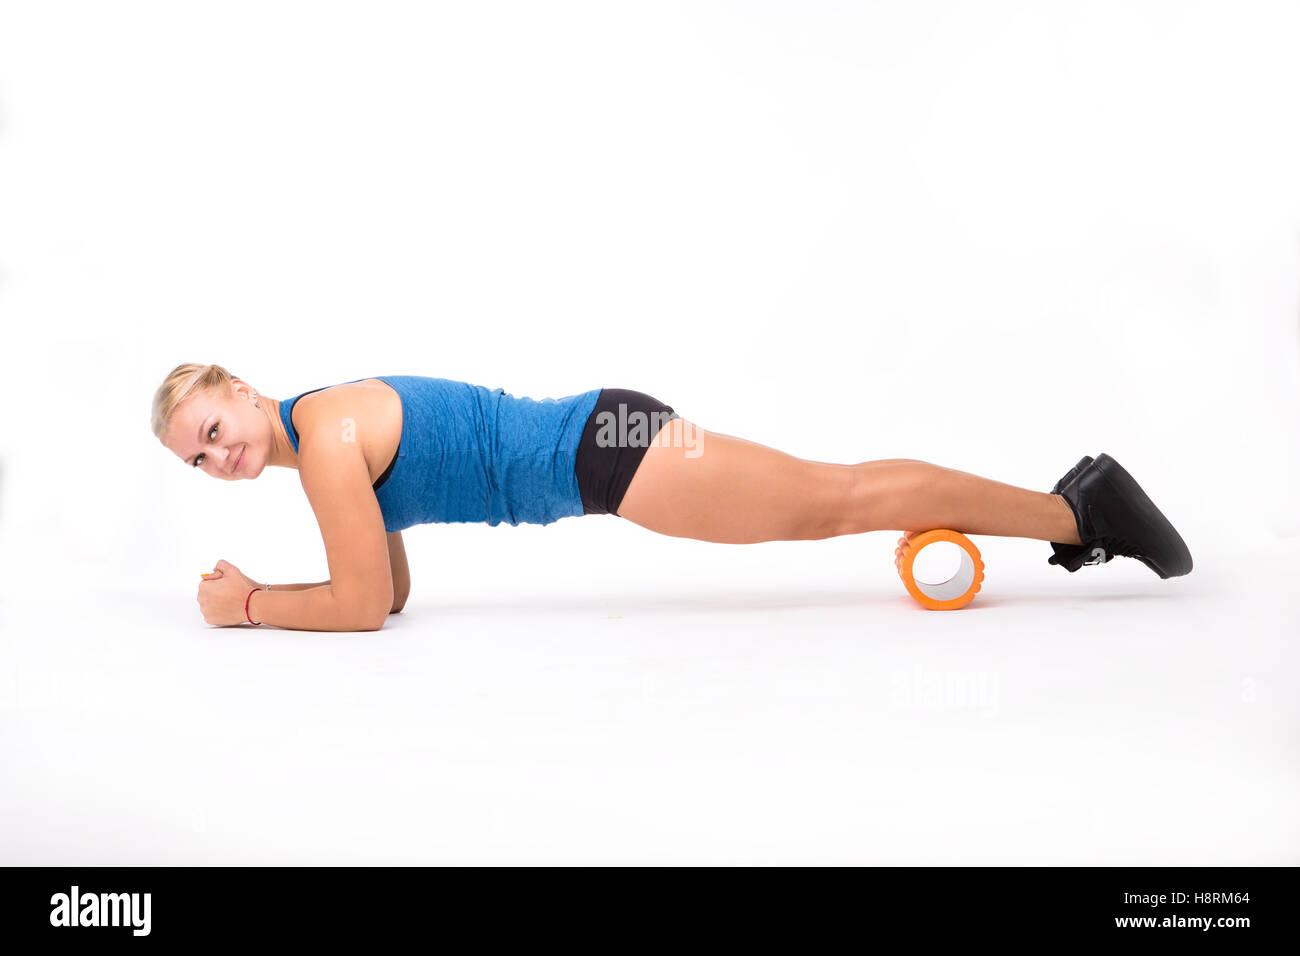 Fitness-Frau training isolierten auf weißen Hintergrund Stockfoto